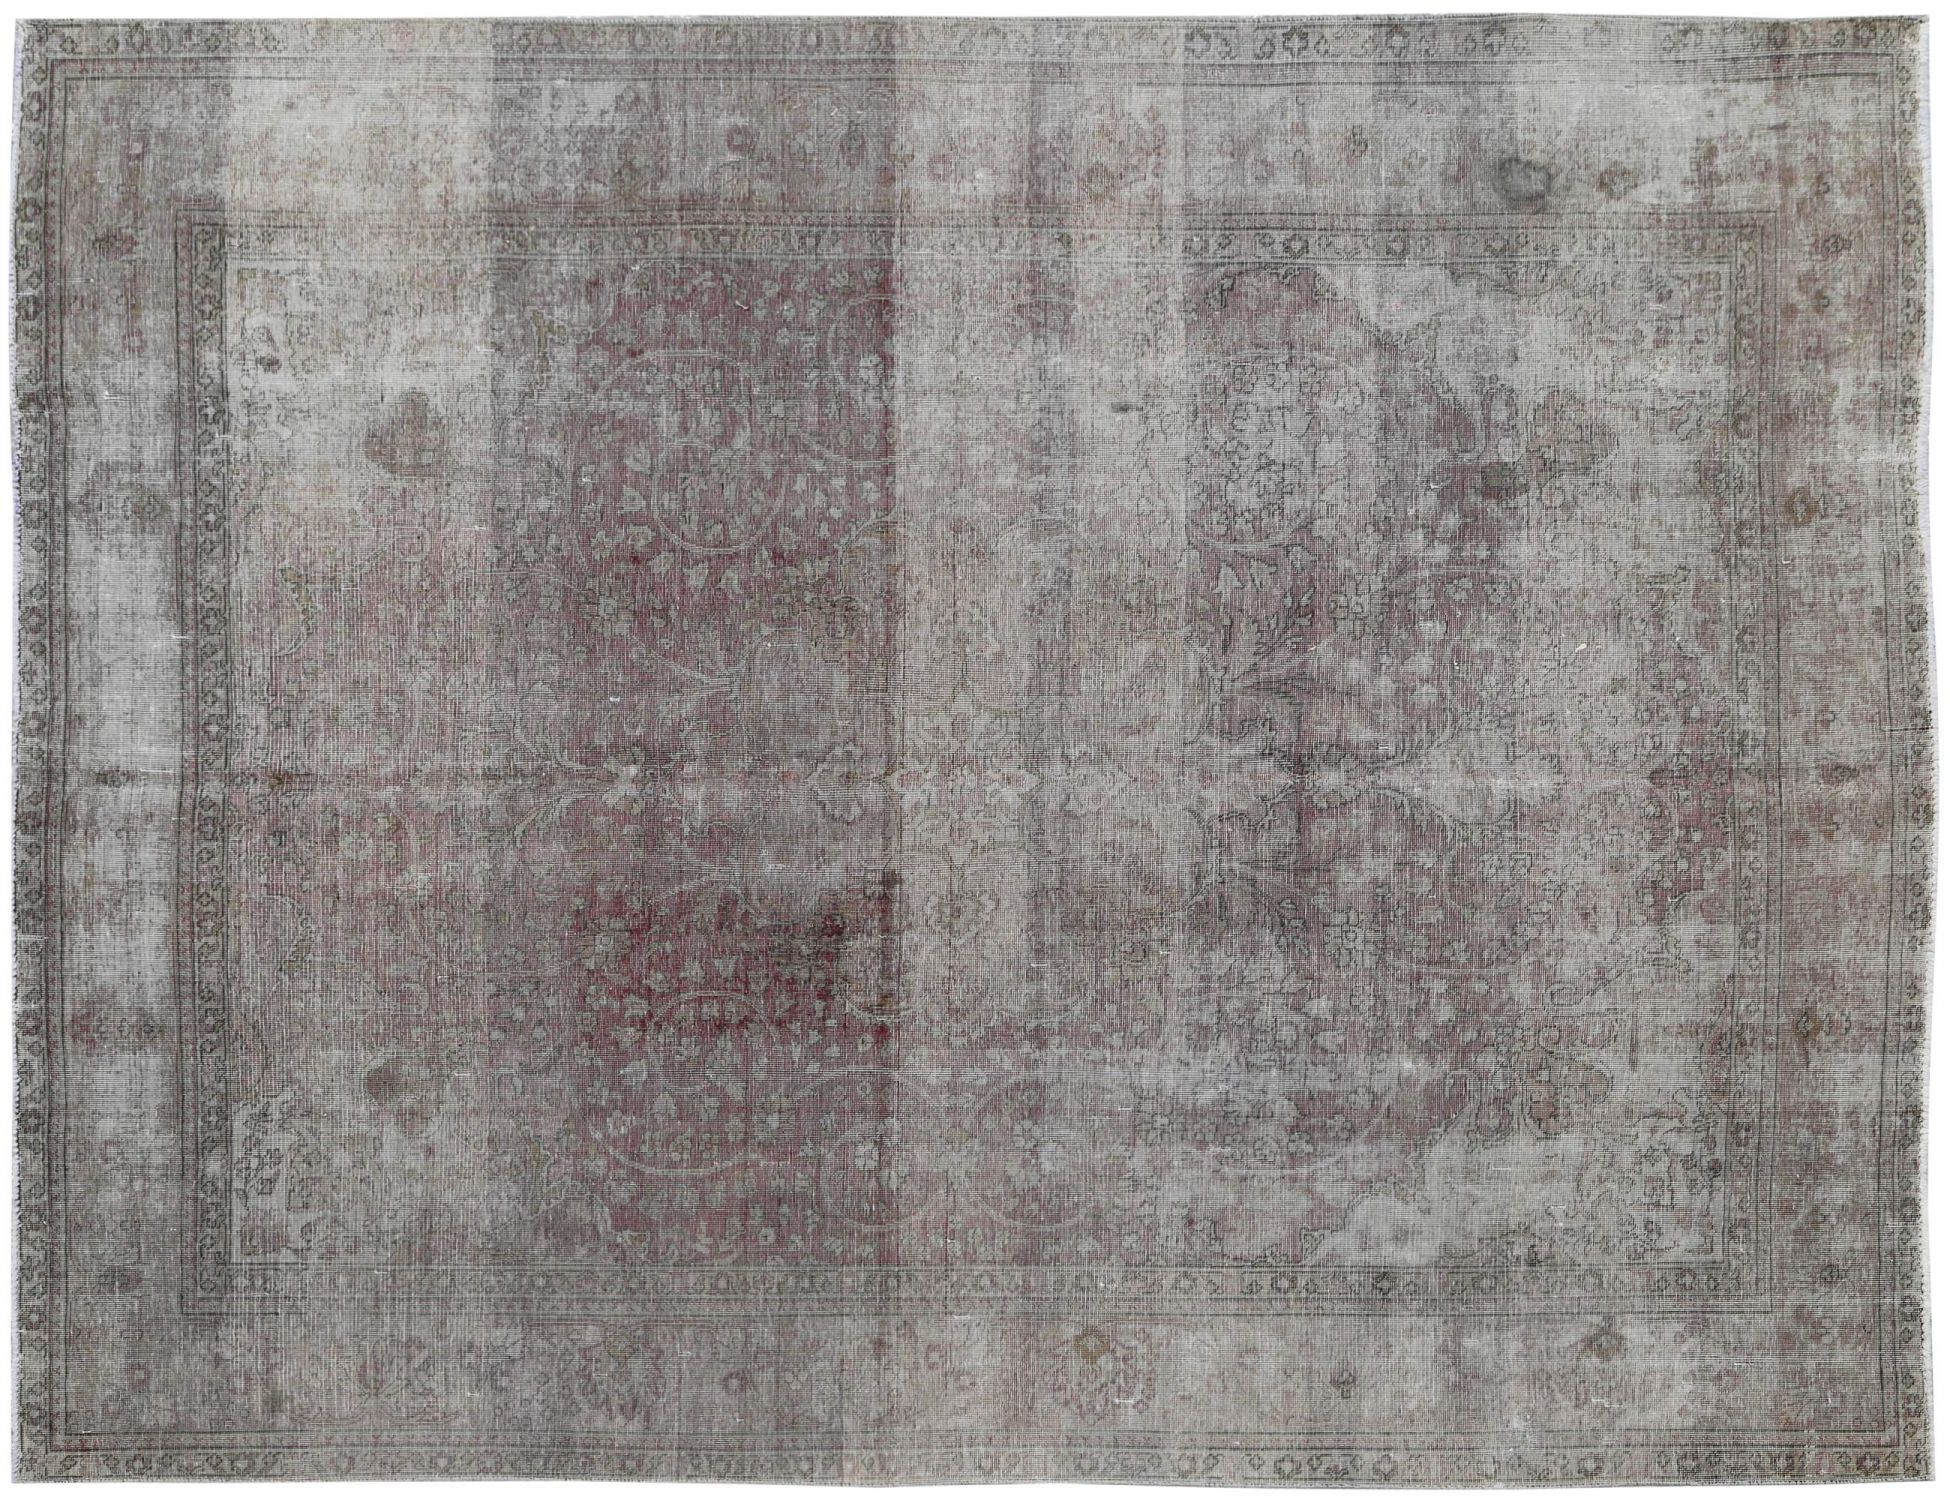 Stonewash Χαλί  Μπεζ <br/>354 x 259 cm